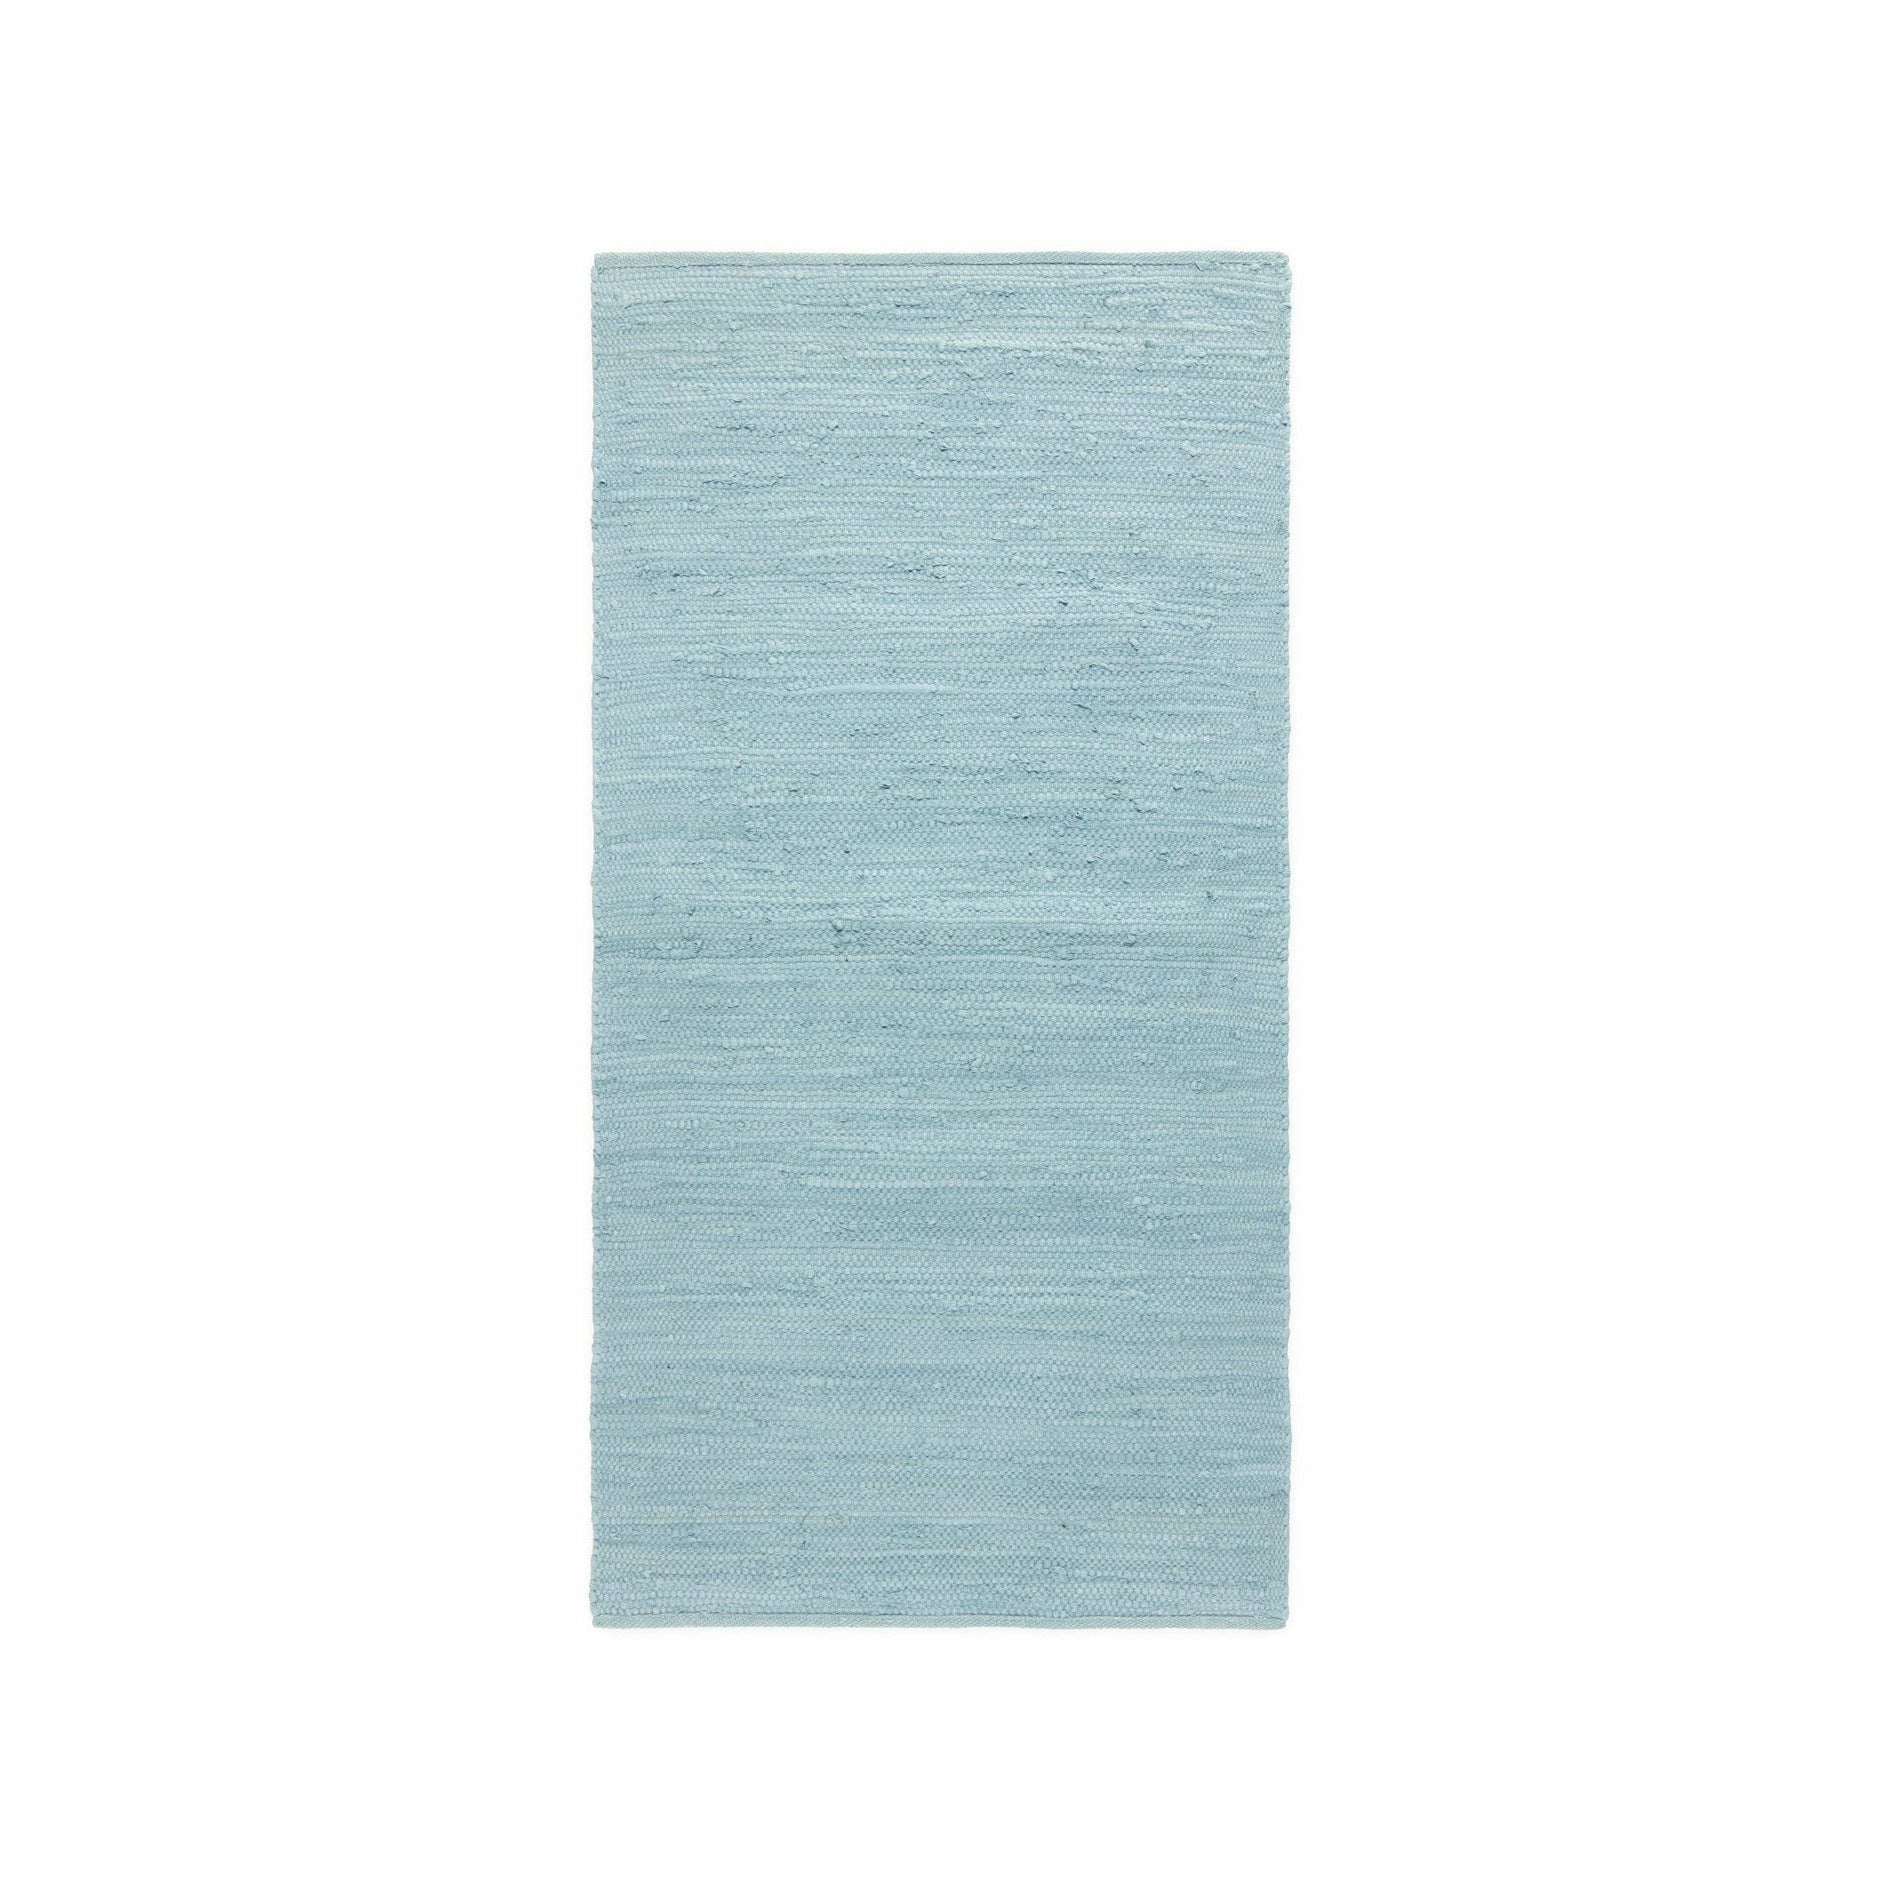 Rug Solid Katoenen tapijt dagdroom blauw, 170 x 240 cm